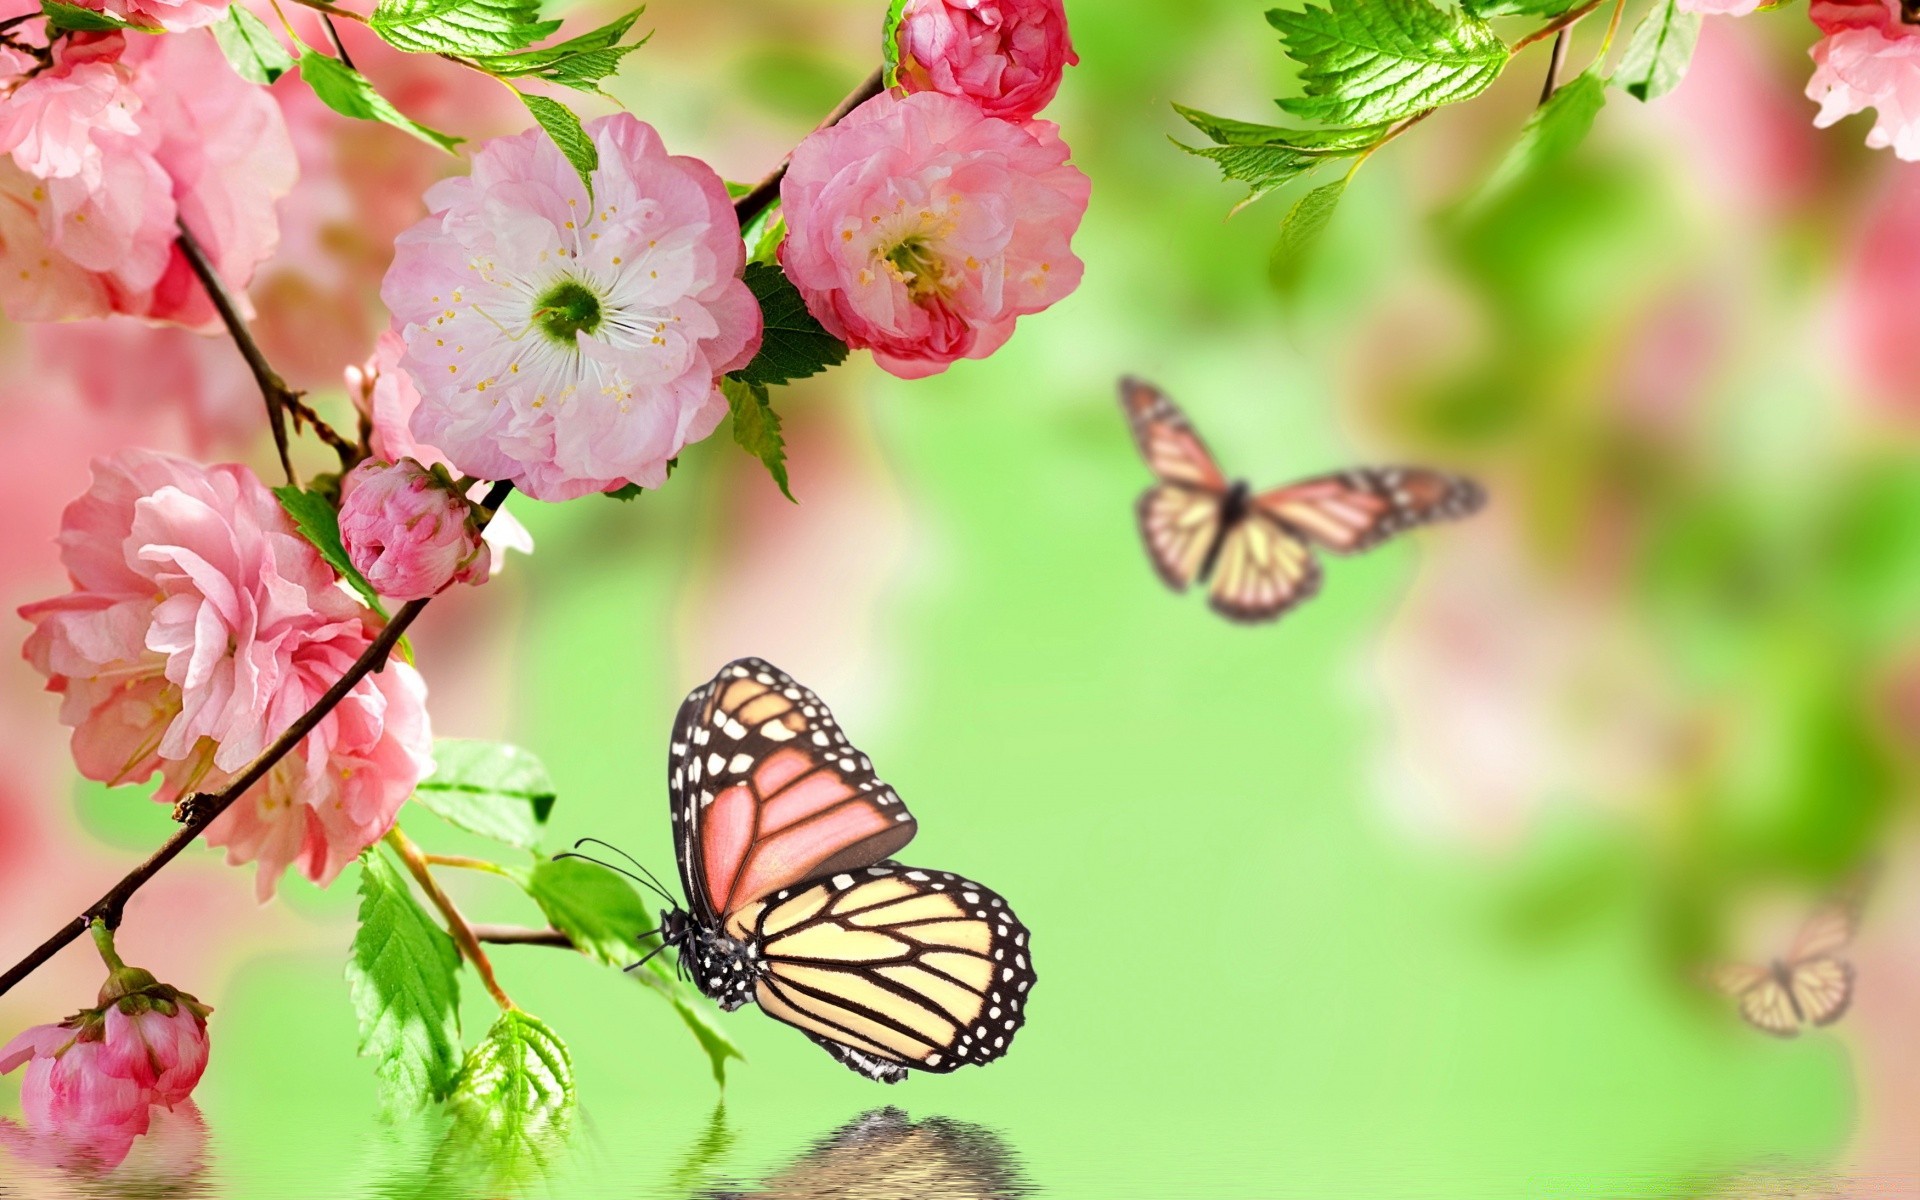 весна природа цветок лето лист флора яркий сад на открытом воздухе бабочка рост цвет нежный насекомое хорошую погоду сезон цветочные крупным планом